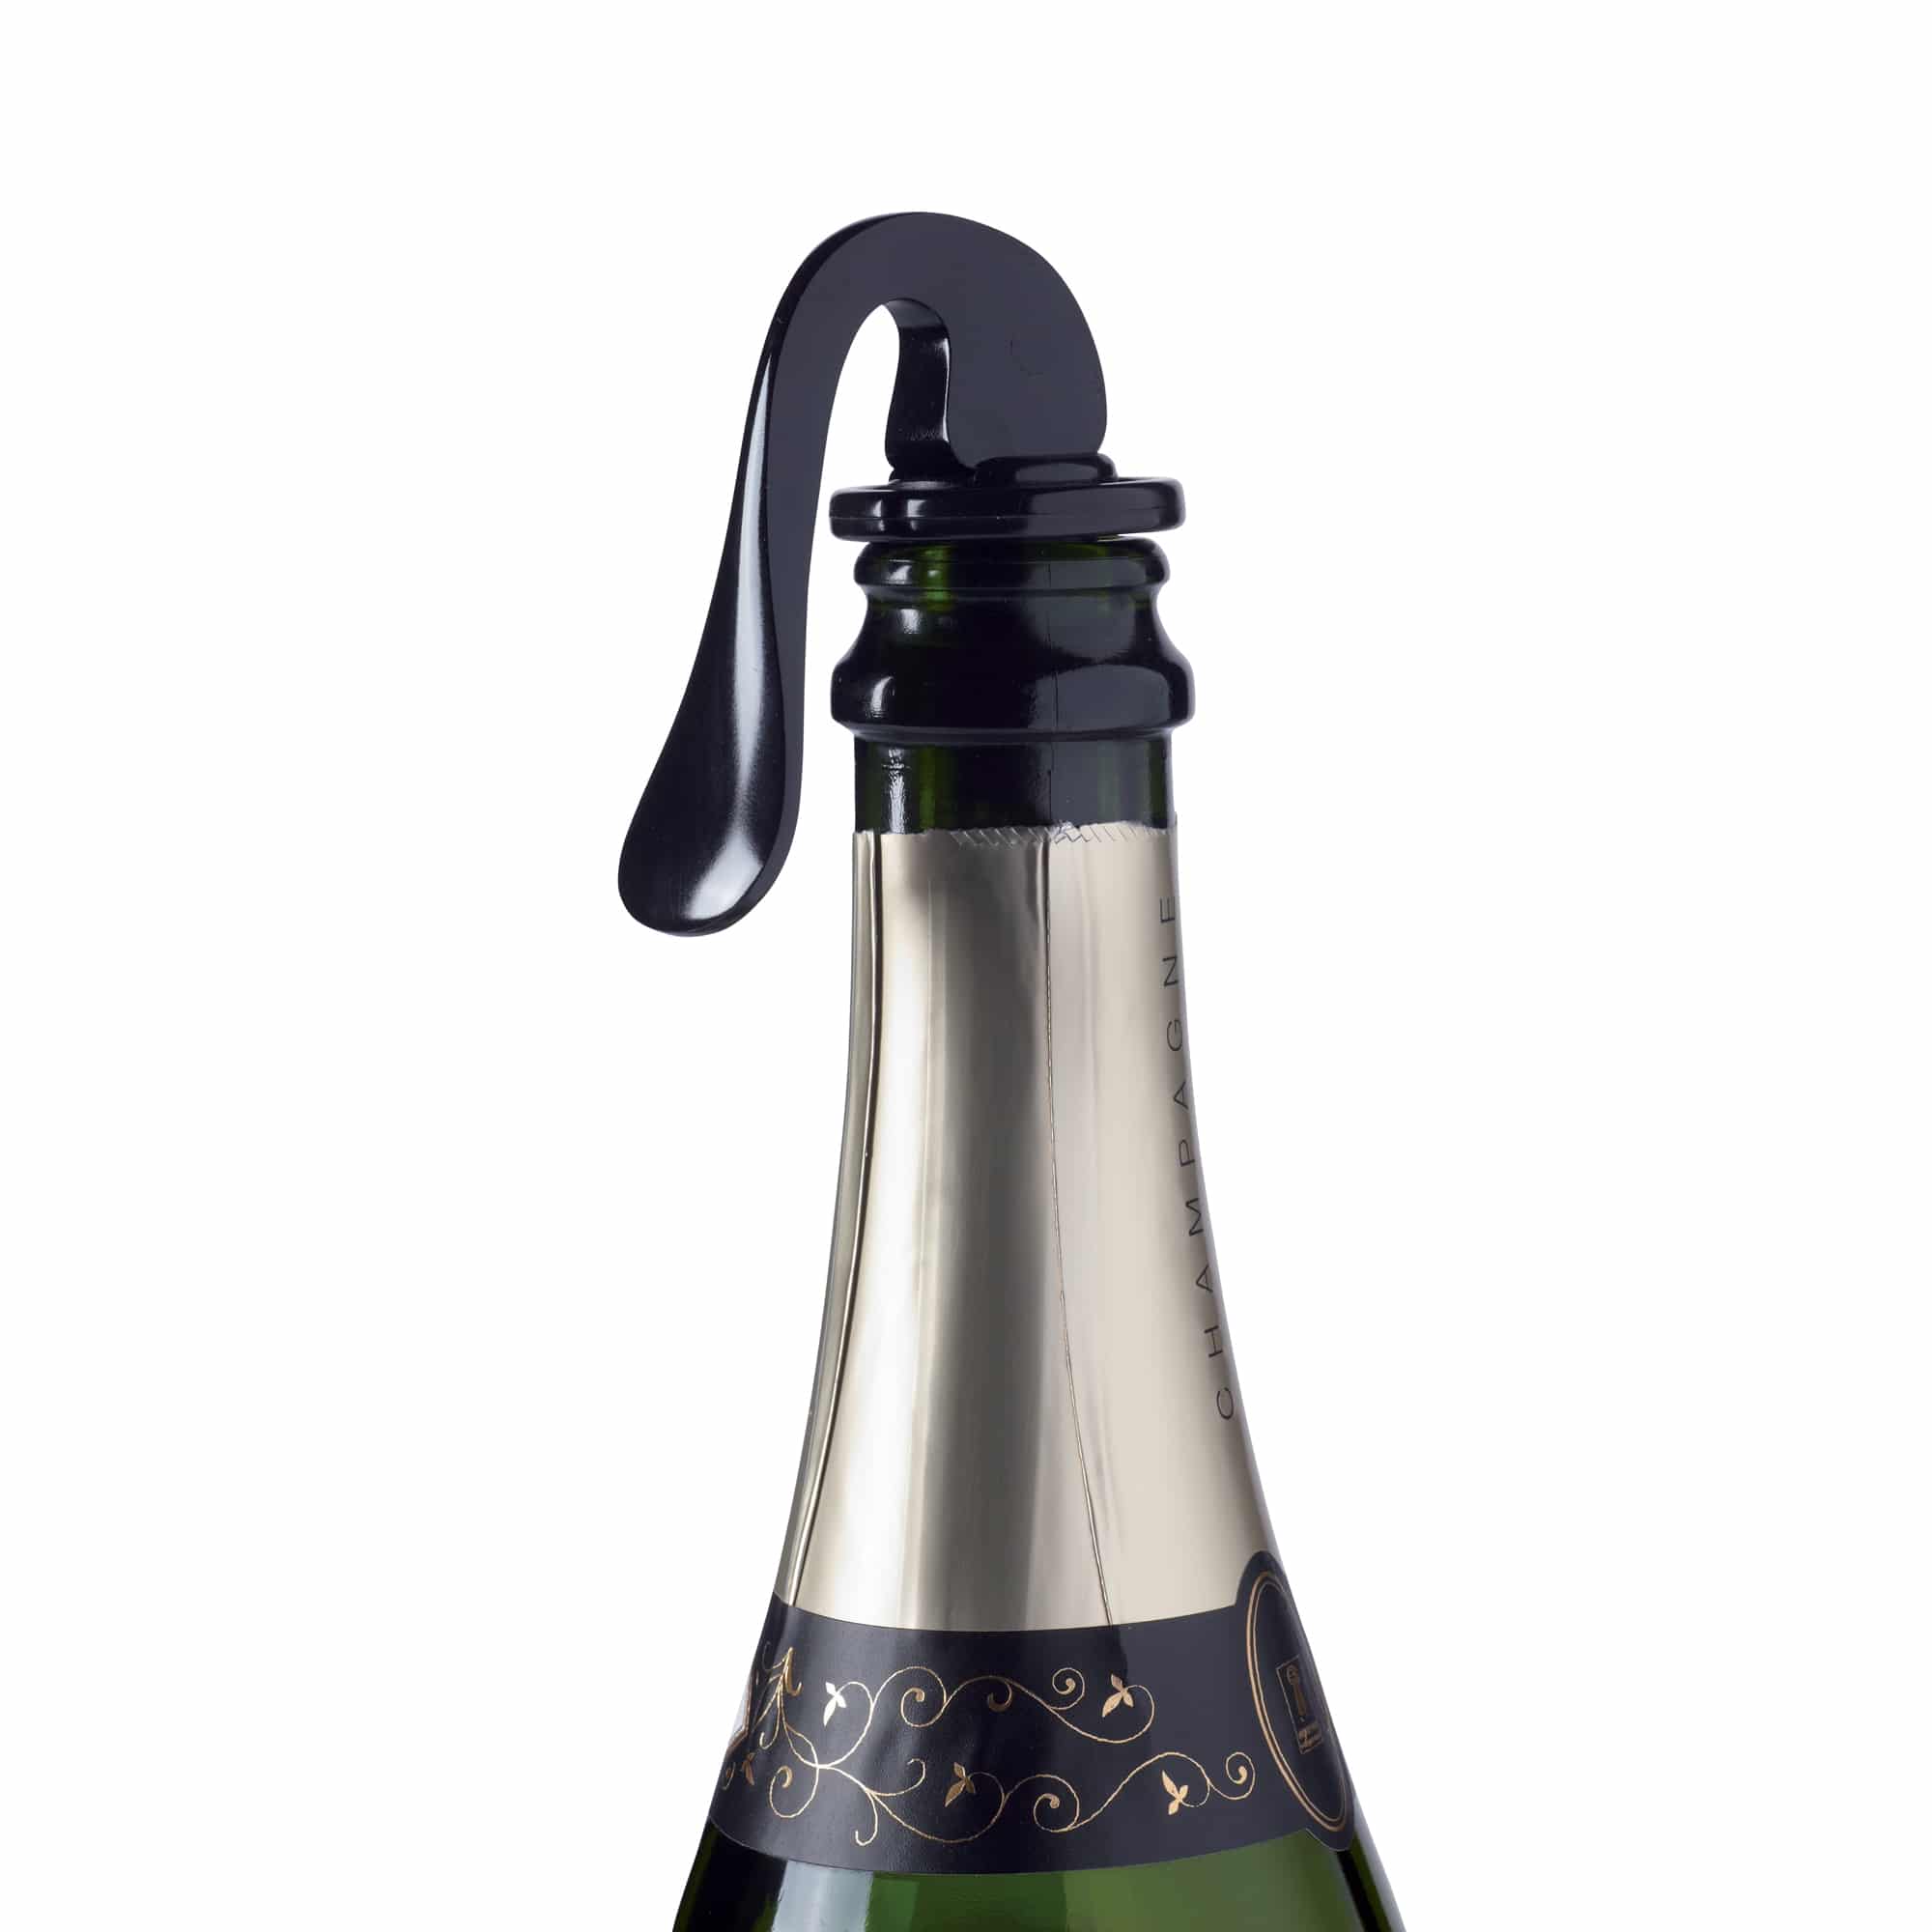 WOTOR Bouchon Champagne Paquet de 3, Acier Inoxydable Bouchon Bouteille  Champagne avec Silicone de qualité Alimentaire, Bouchon Champagne Garde  Bulles (Or) : : Cuisine et Maison